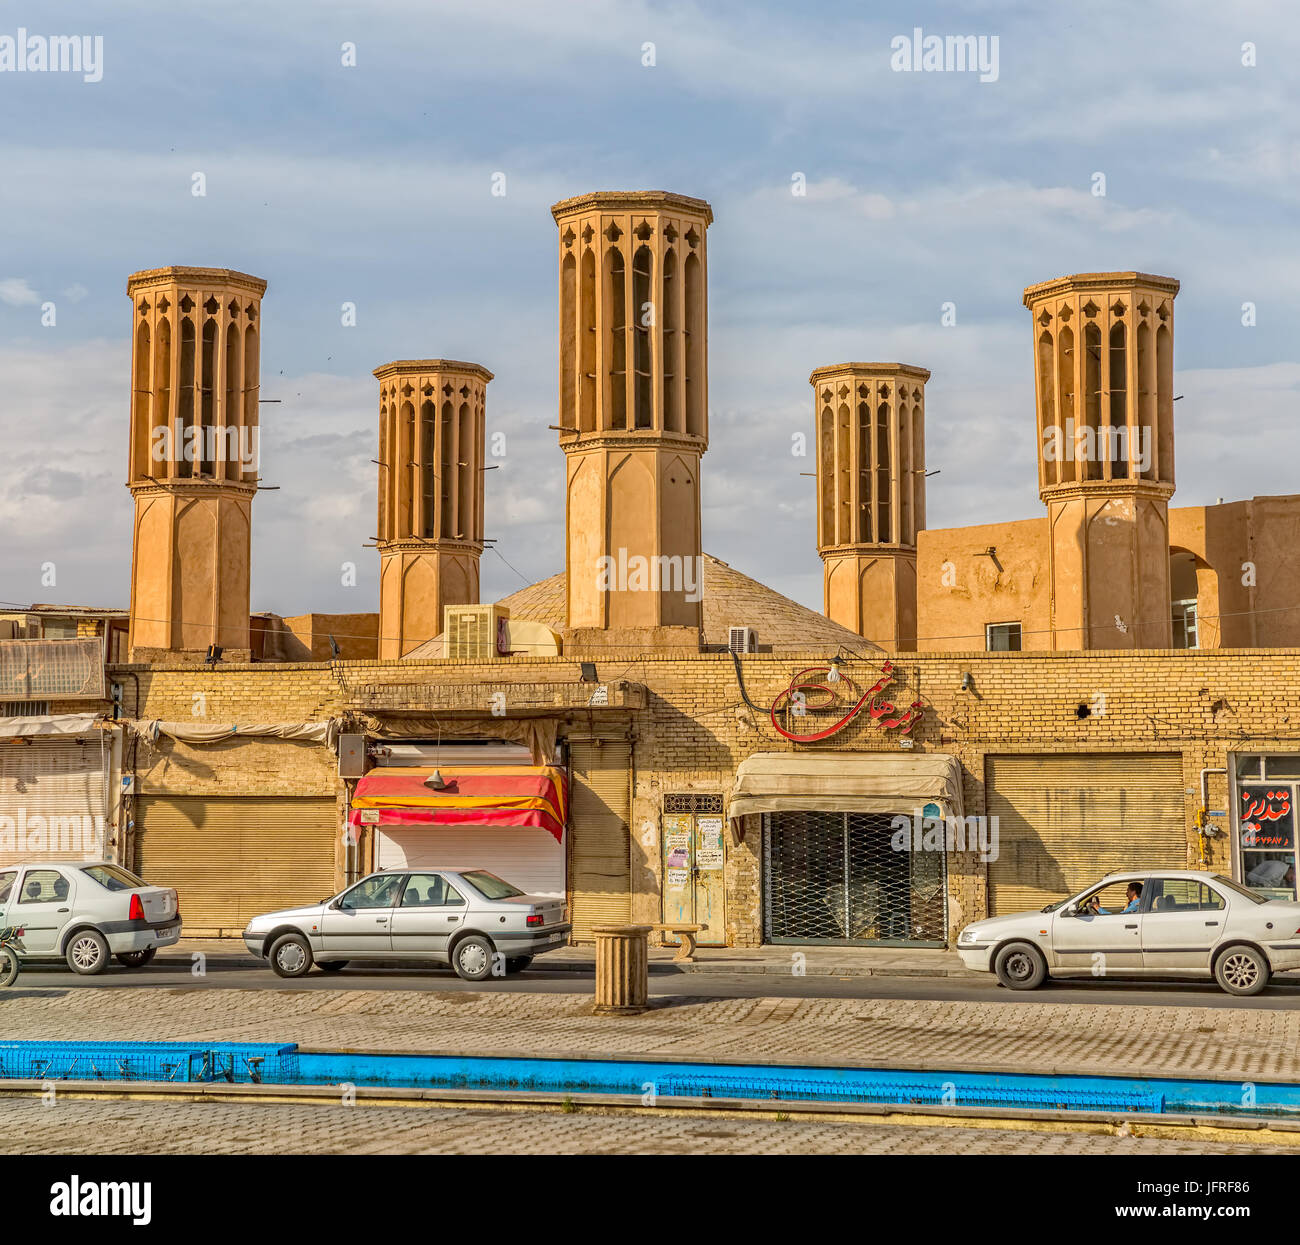 YAZD, IRAN - 5 Maggio 2015: Windcatcher Towers è un tradizionale Persiano elemento architettonico per creare una ventilazione naturale negli edifici, vista dal Foto Stock